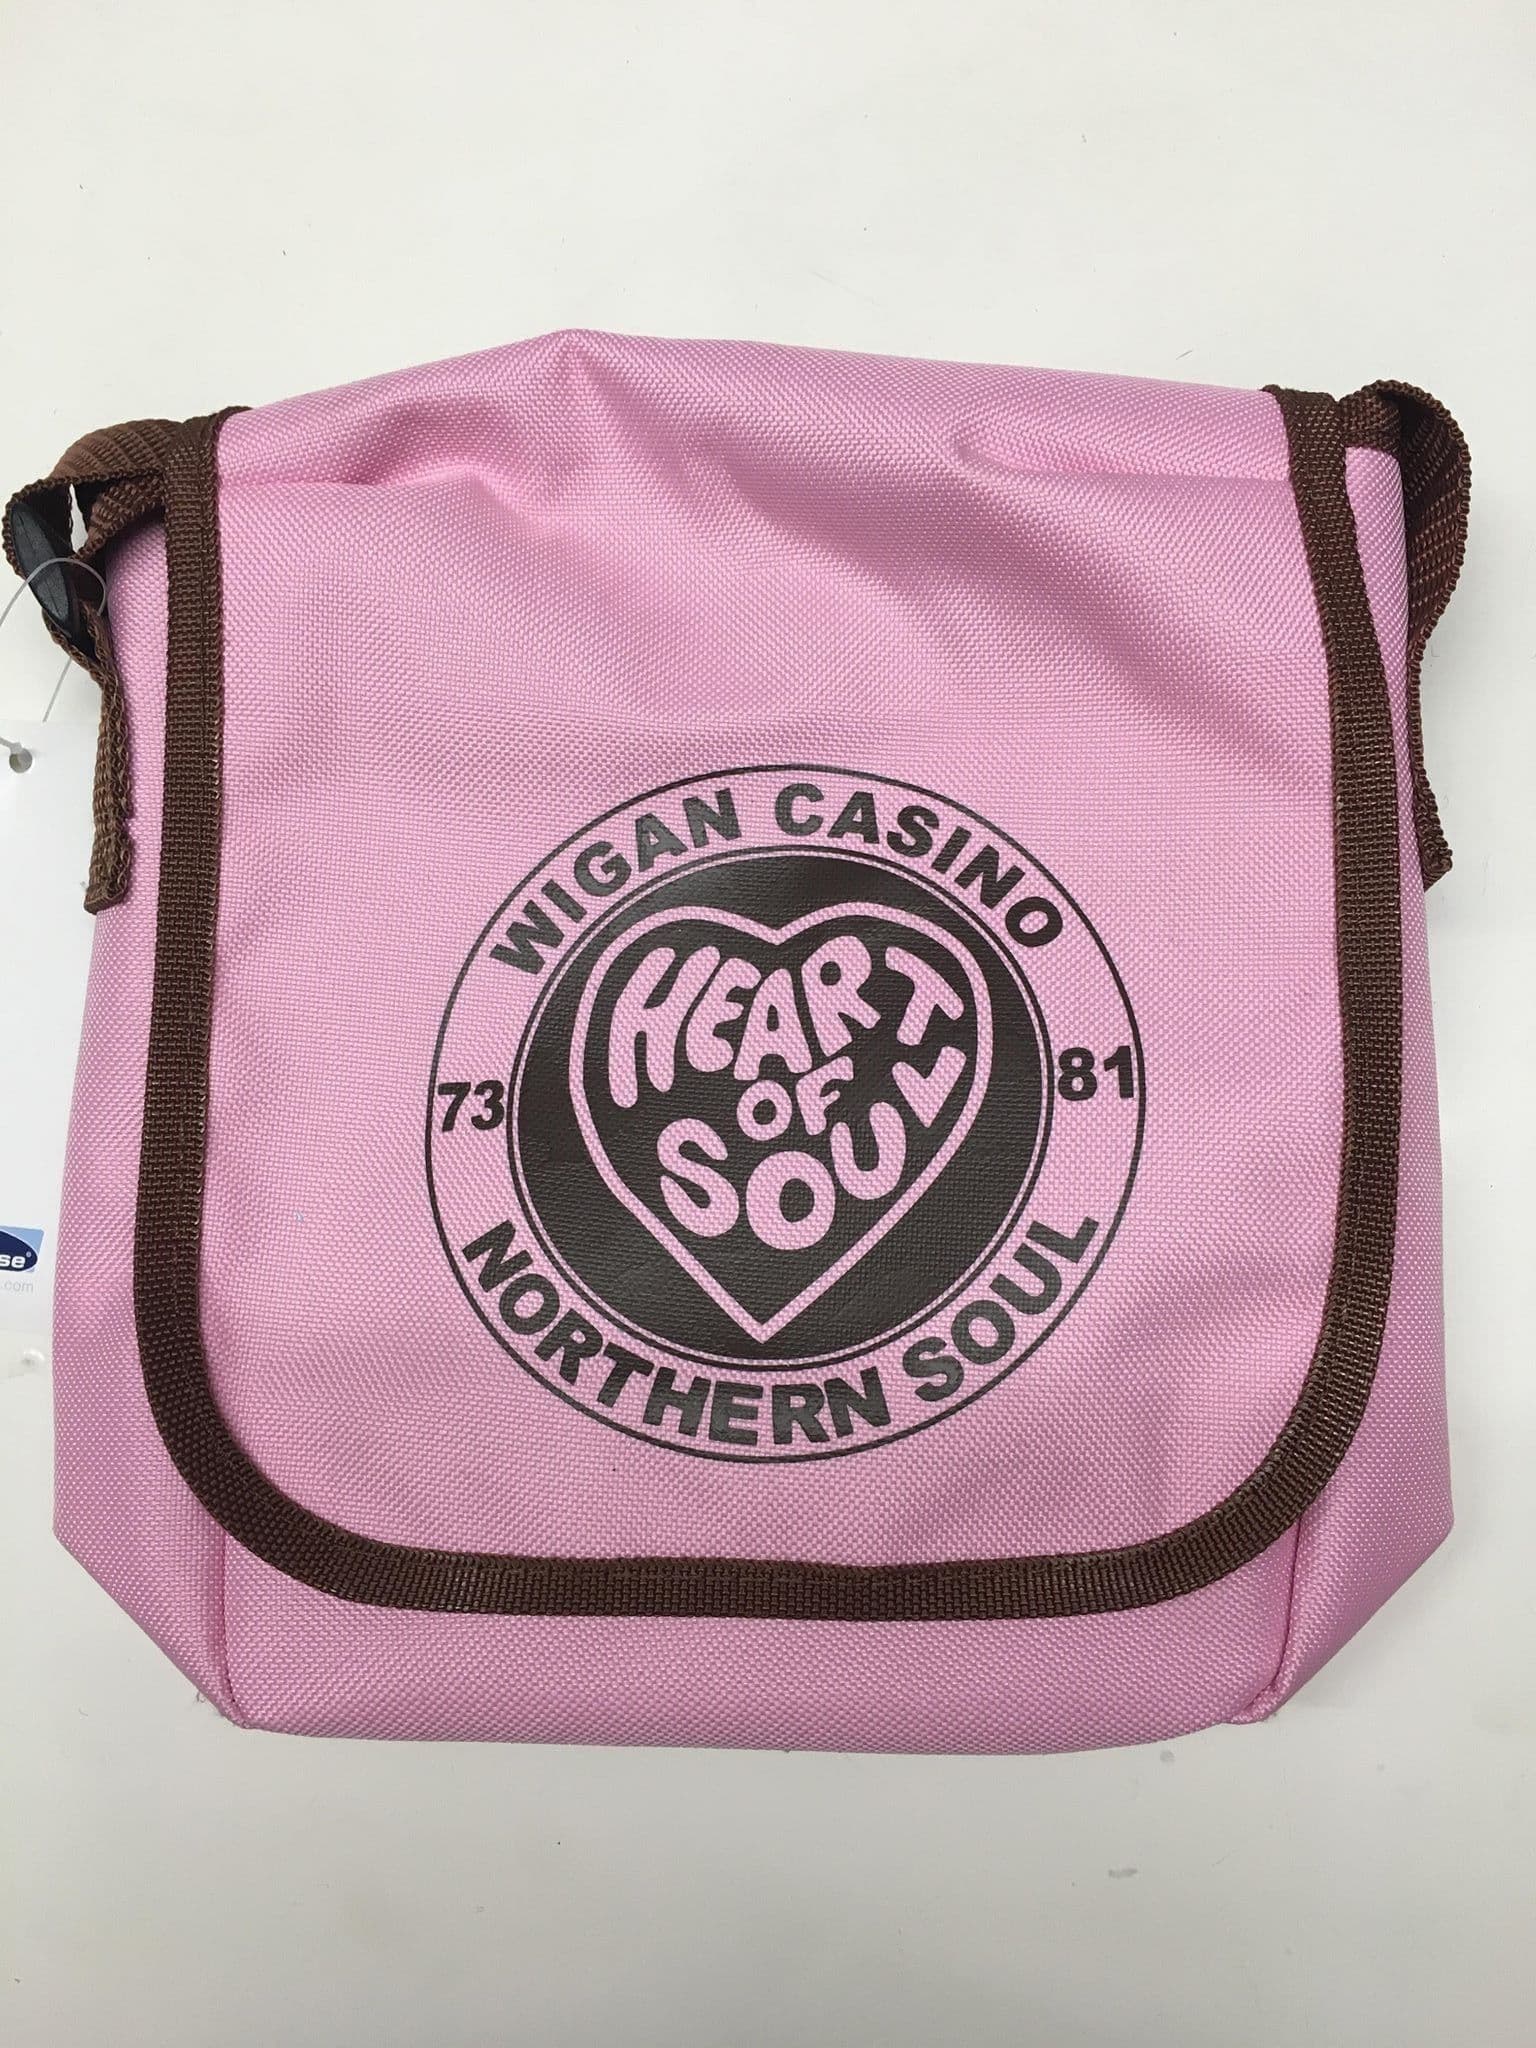 Wigan Casino Pink And Brown Bag